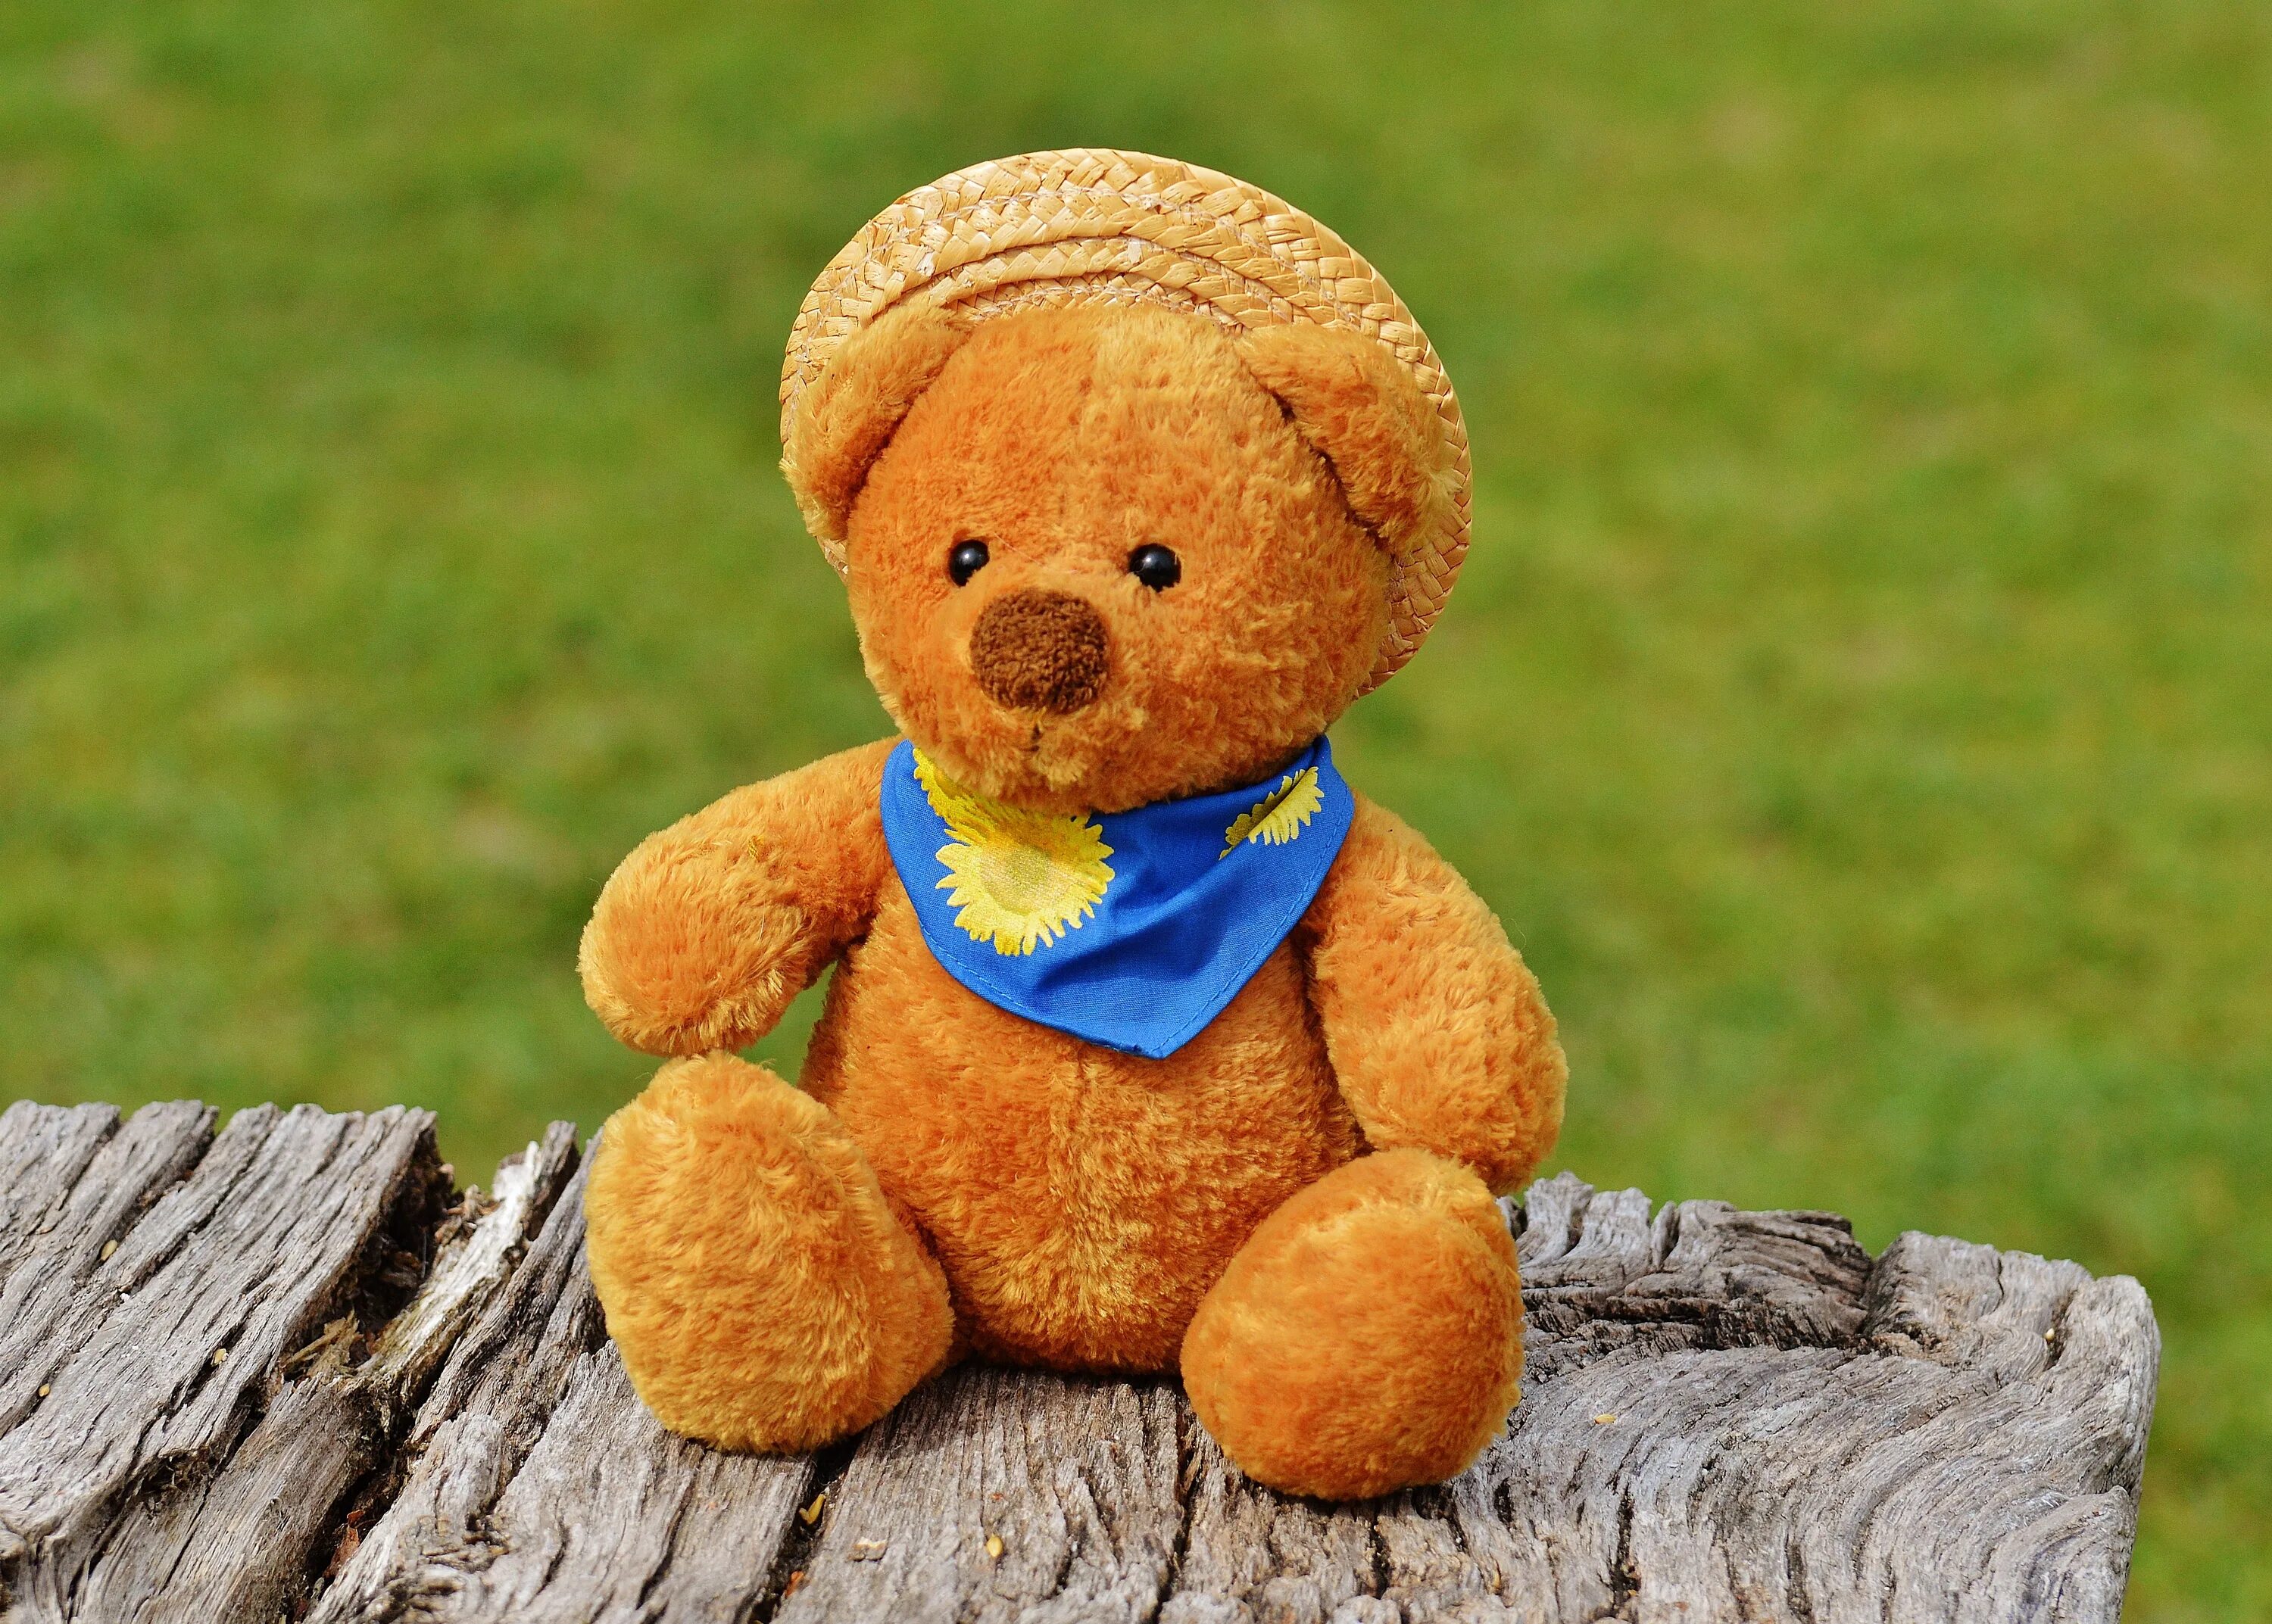 Тедди Беар. Мишки Тедди Беар. Мягкая игрушка Тедди Беар. Плюшевый Медвежонок. I m teddy bear